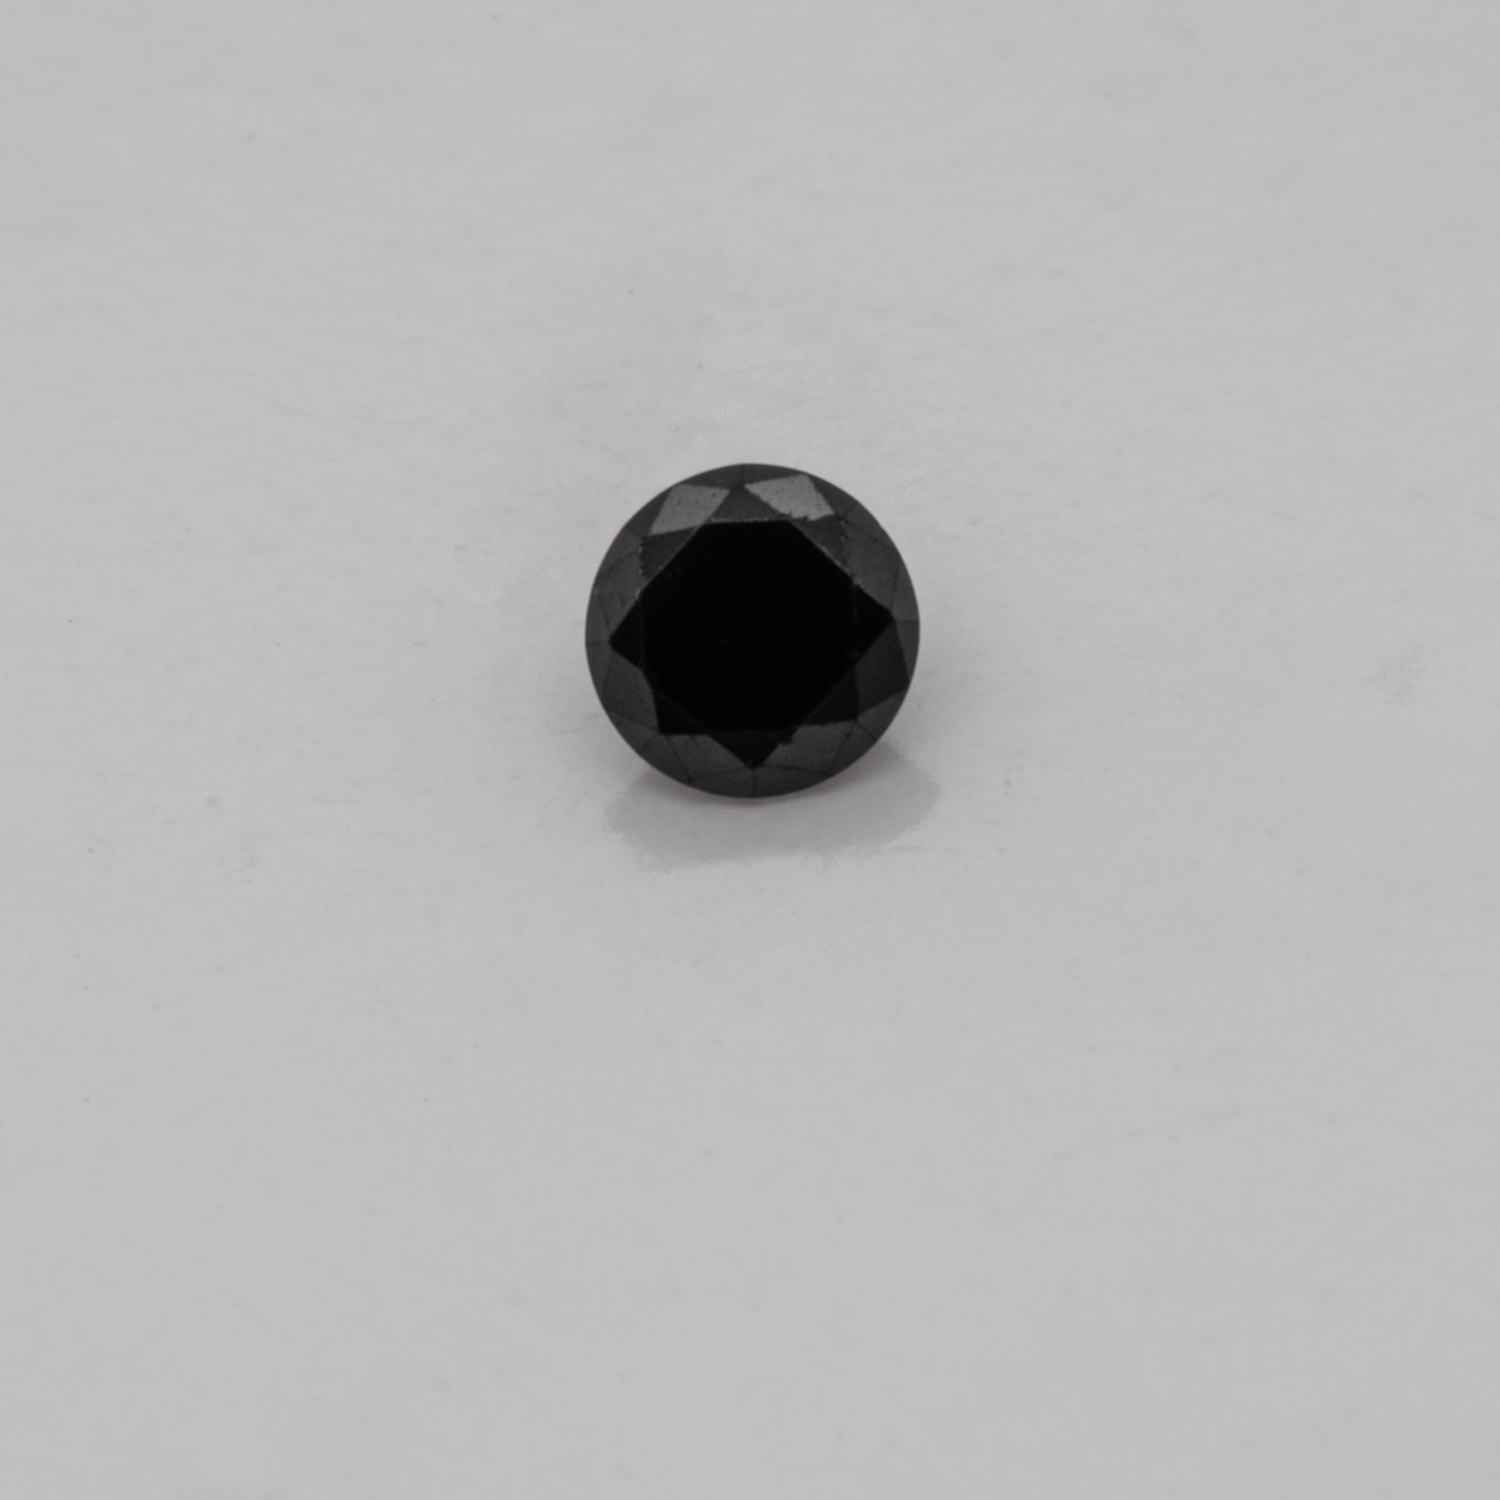 Diamant - schwarz, nicht transparent, rund, 2,0mm, ca. 0,03 cts, Nr. D11060